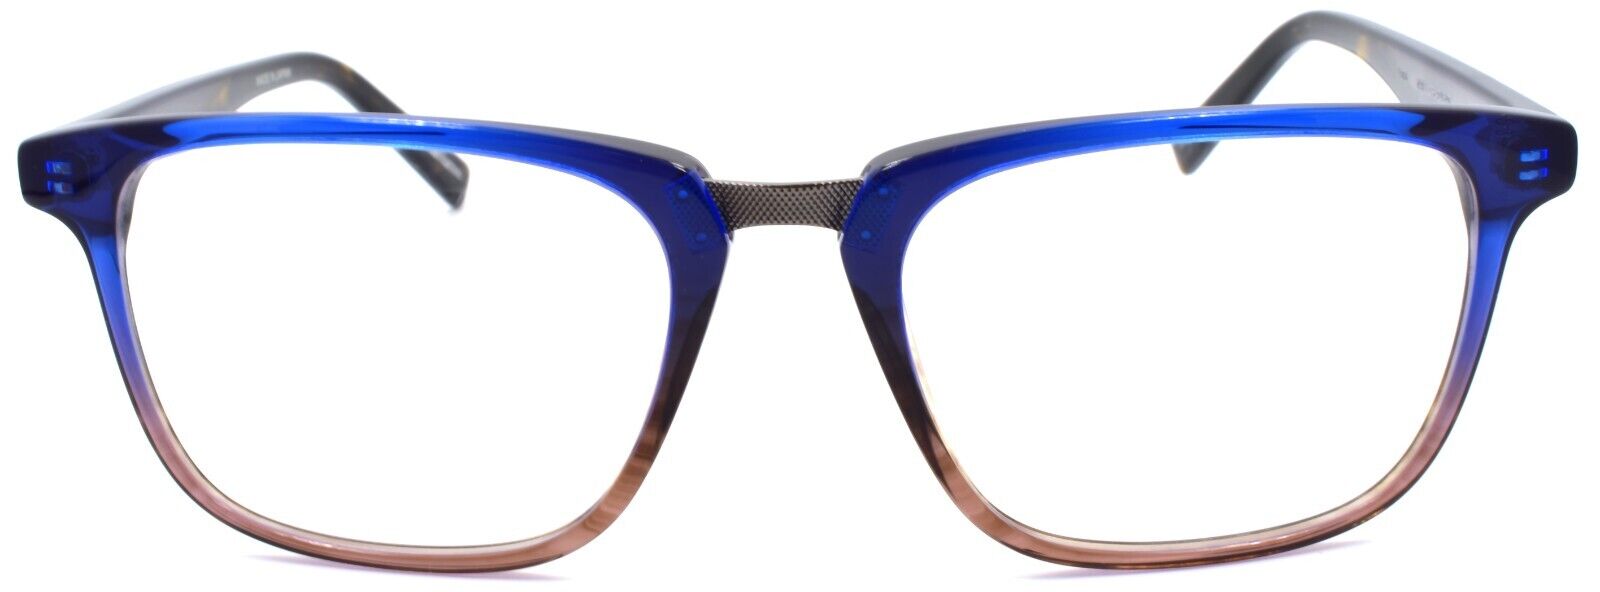 2-John Varvatos V373 Men's Eyeglasses Frames 54-19-145 Navy Gradient Japan-751286306149-IKSpecs